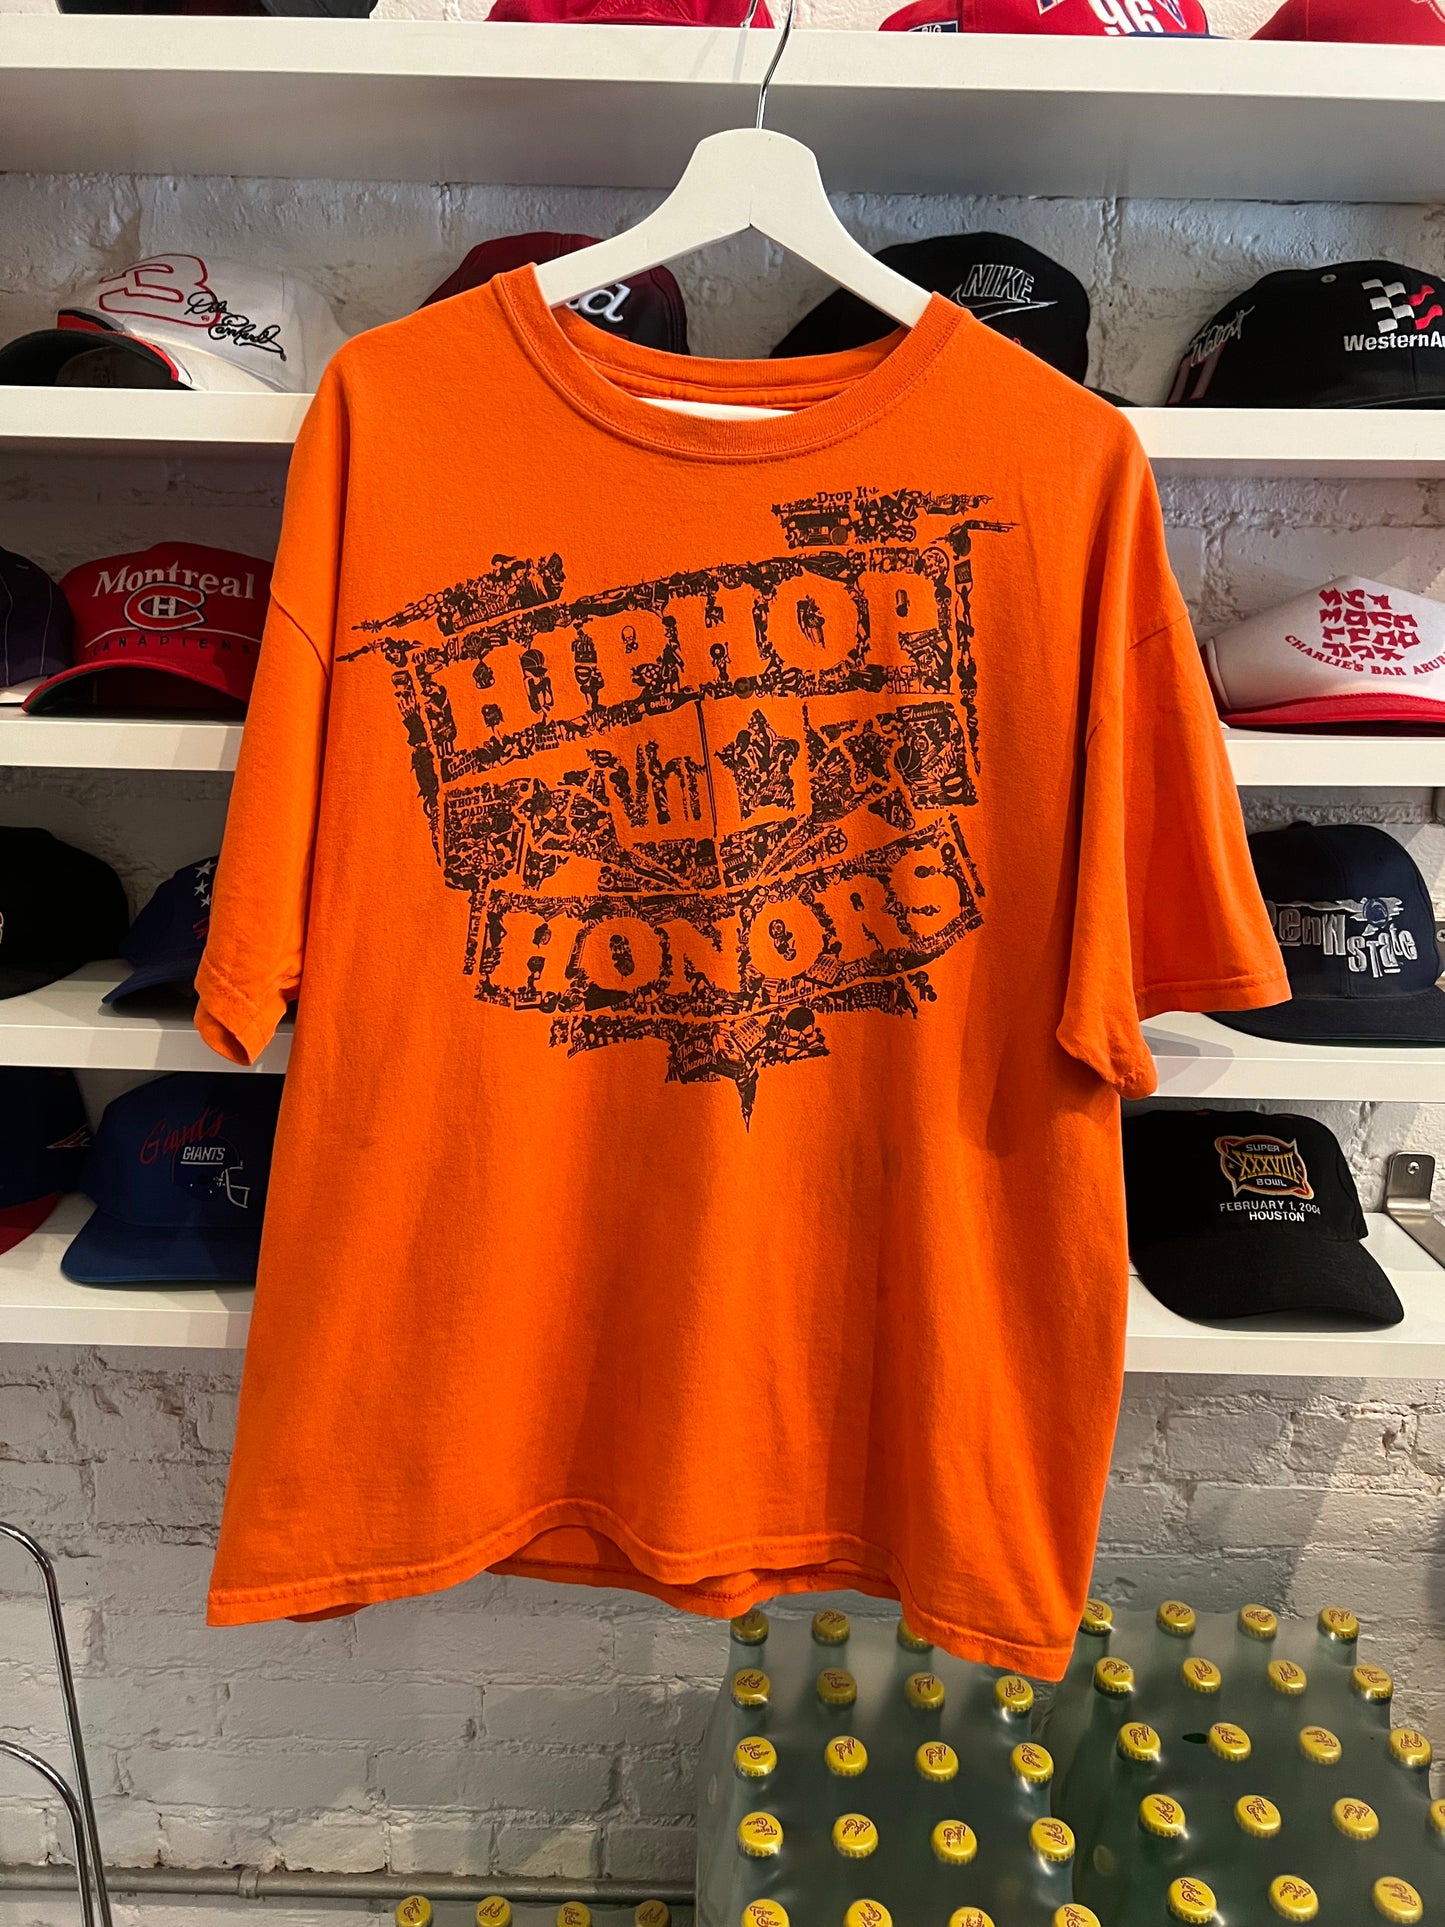 VH1 Hip Hop Honors Staff T-shirt size XL